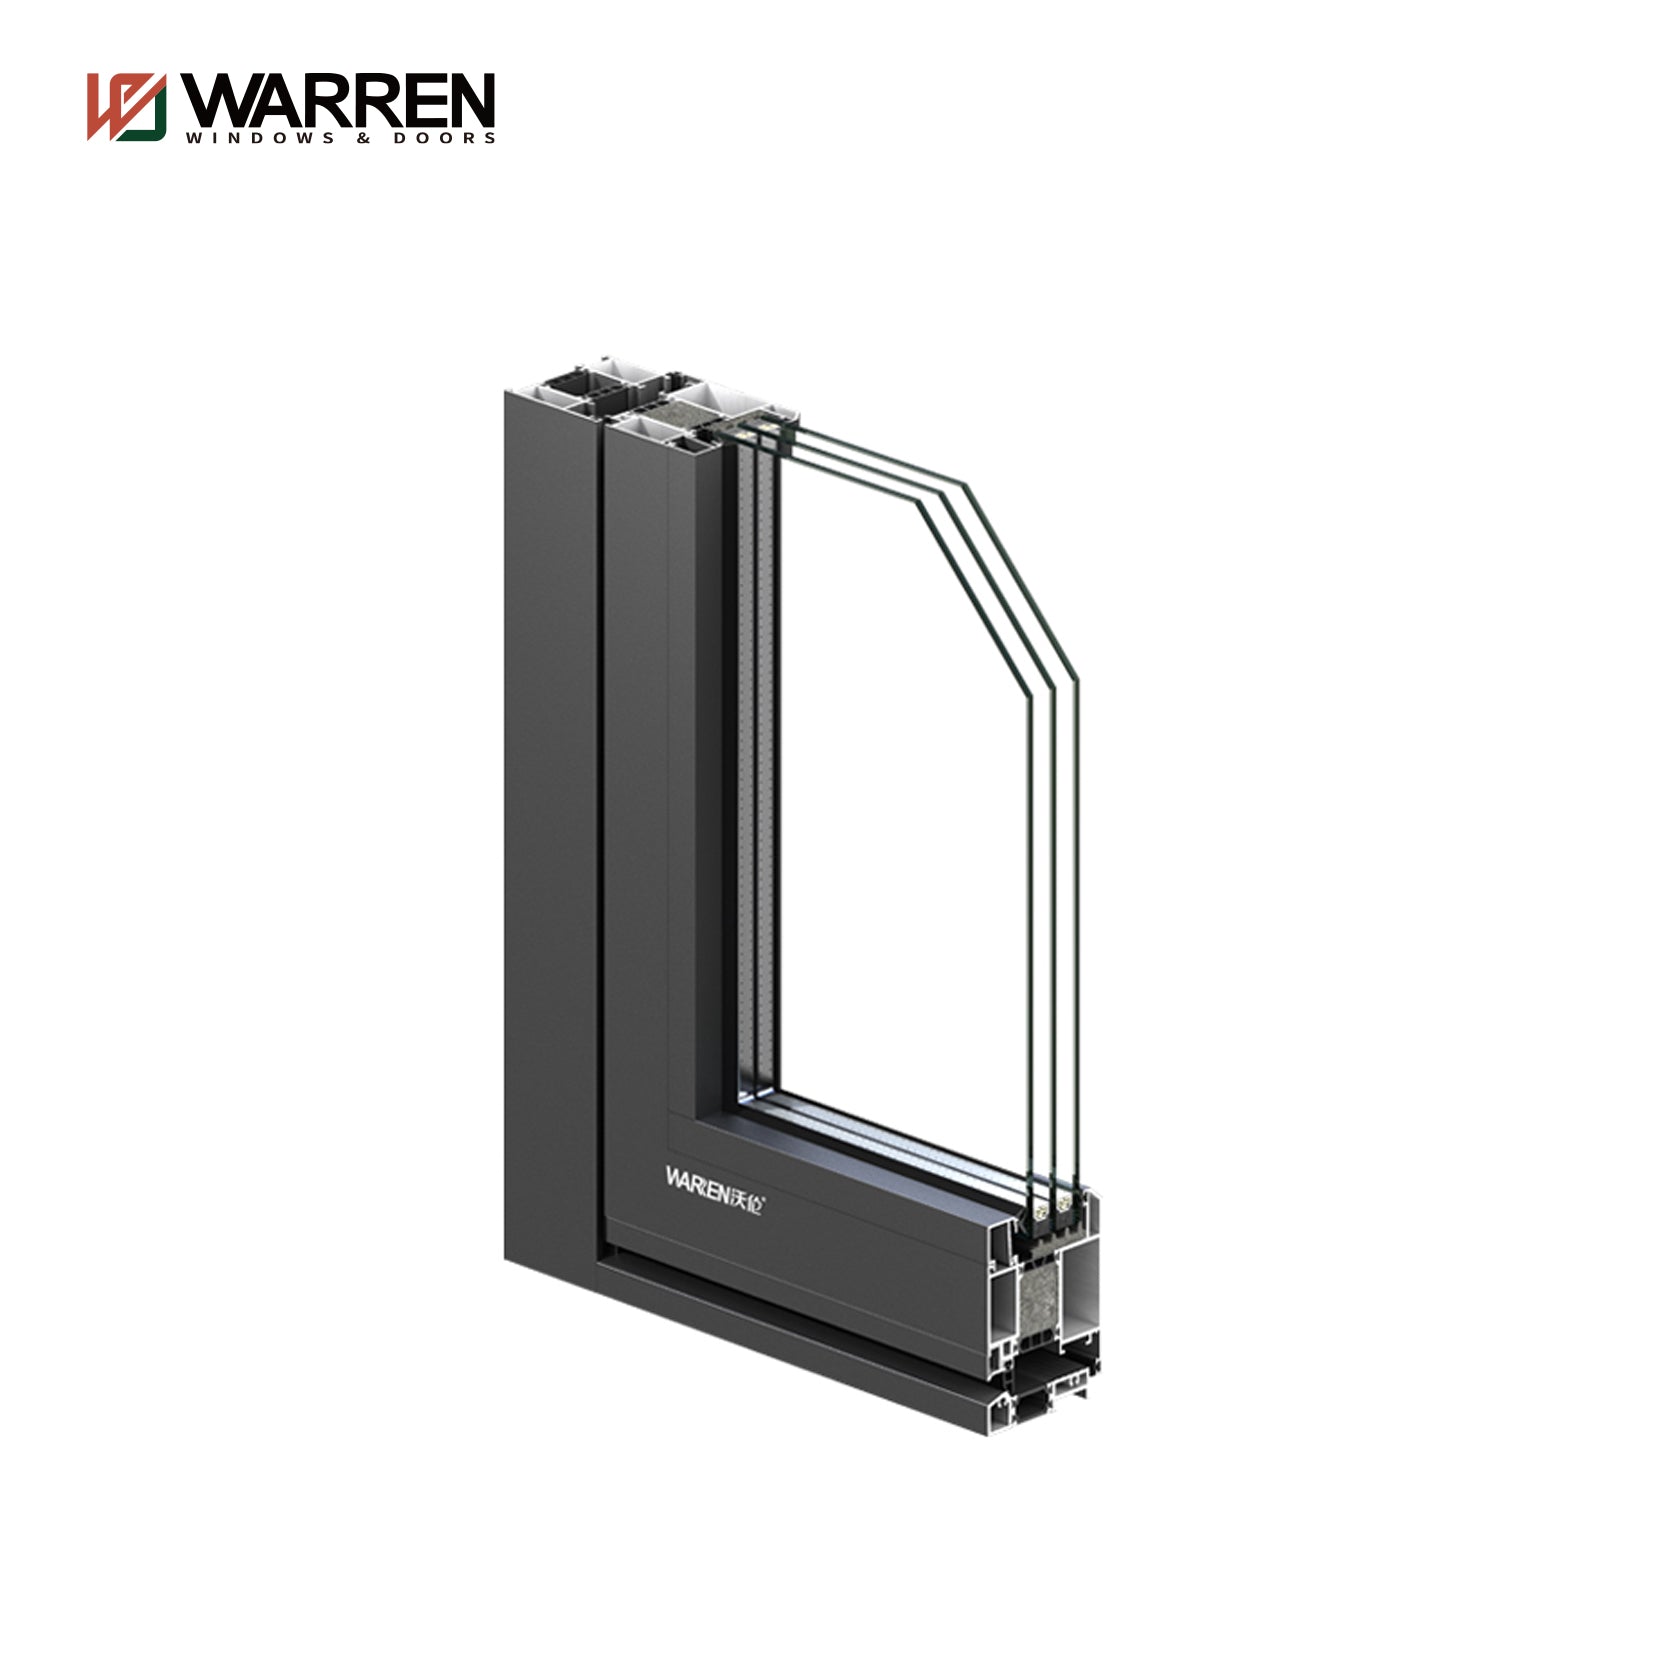 Warren Hot Sale & High Quality Aluminum Exterior Double Glass Entry Door Other Doors Casement Door